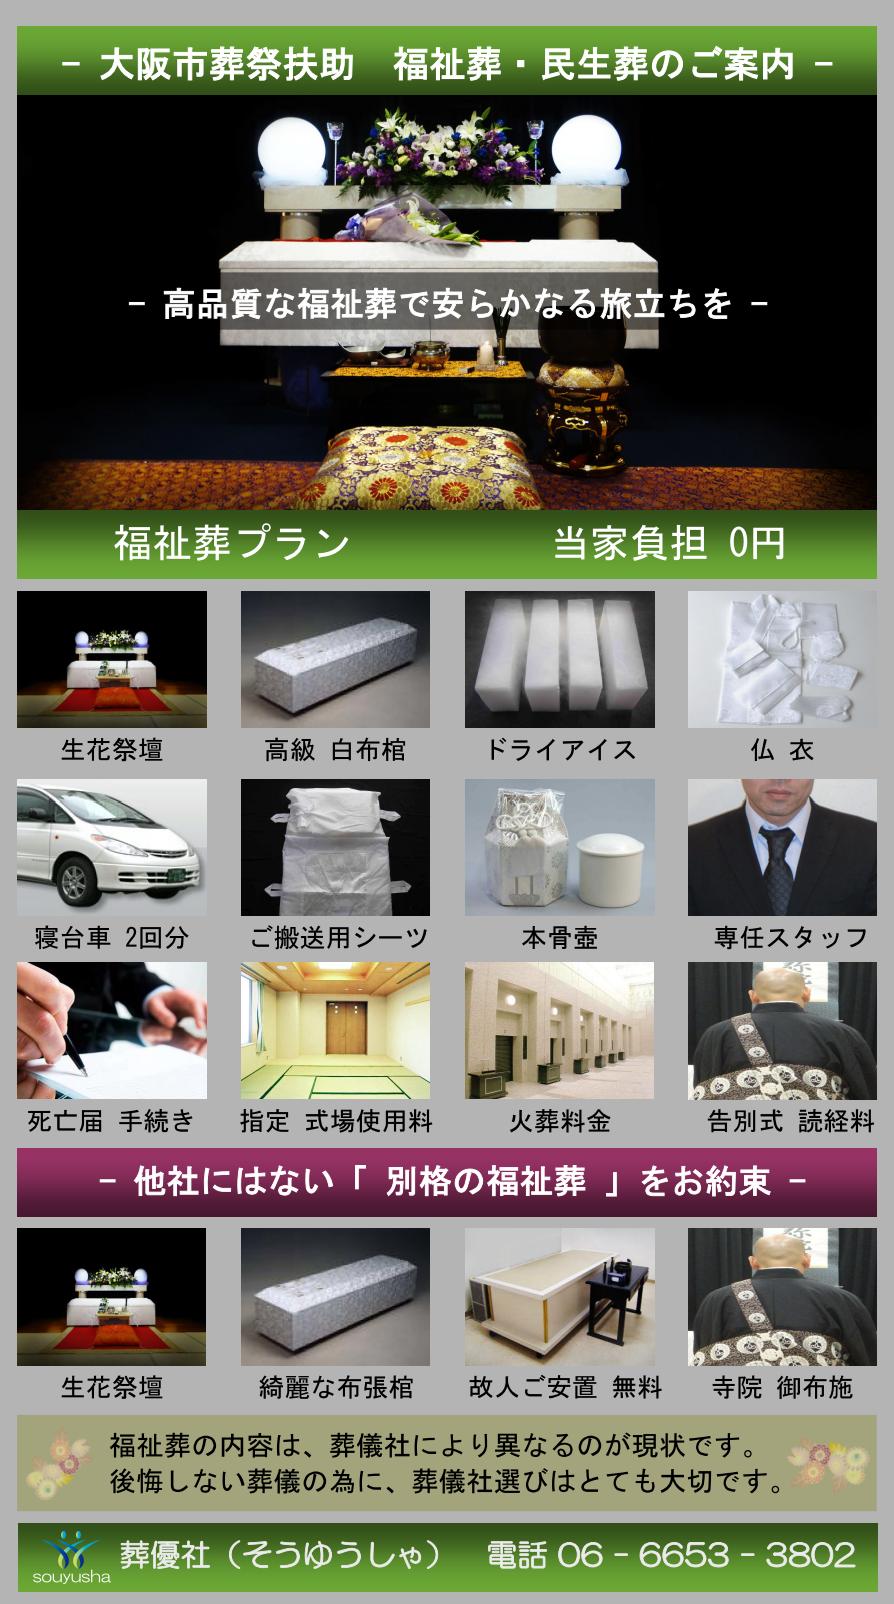 大阪市 大正区での福祉葬、生活保護者のお葬式のご案内